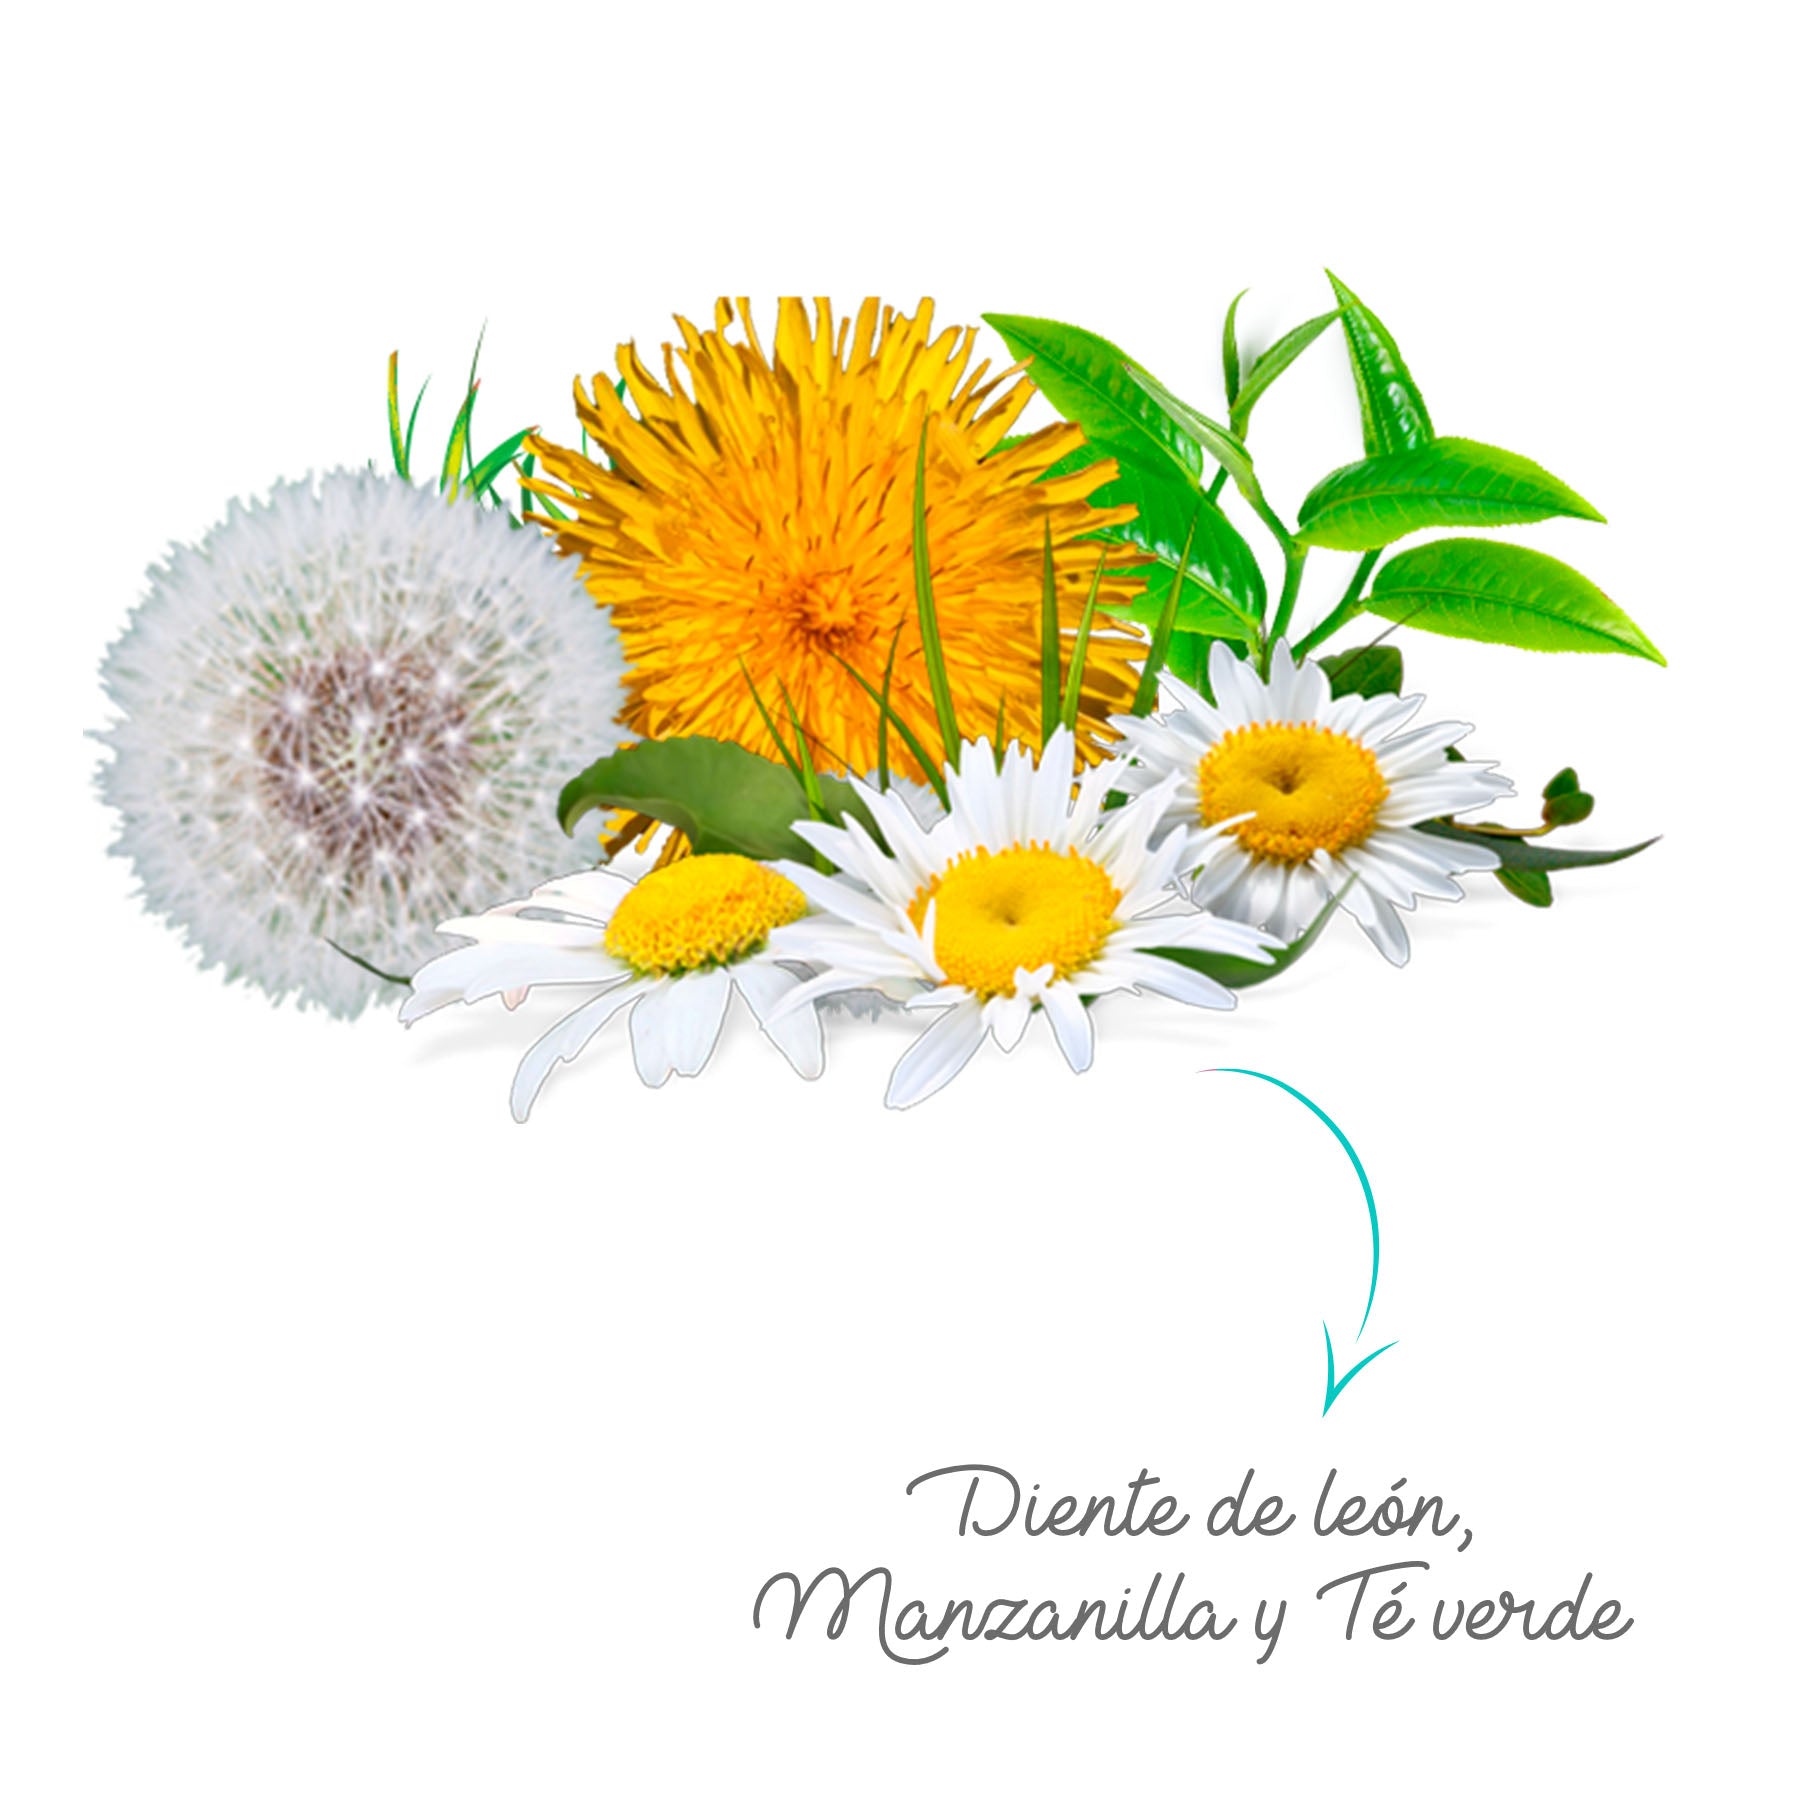 Fórmula Herbal (Manzanilla, Diente de León y Té Verde)